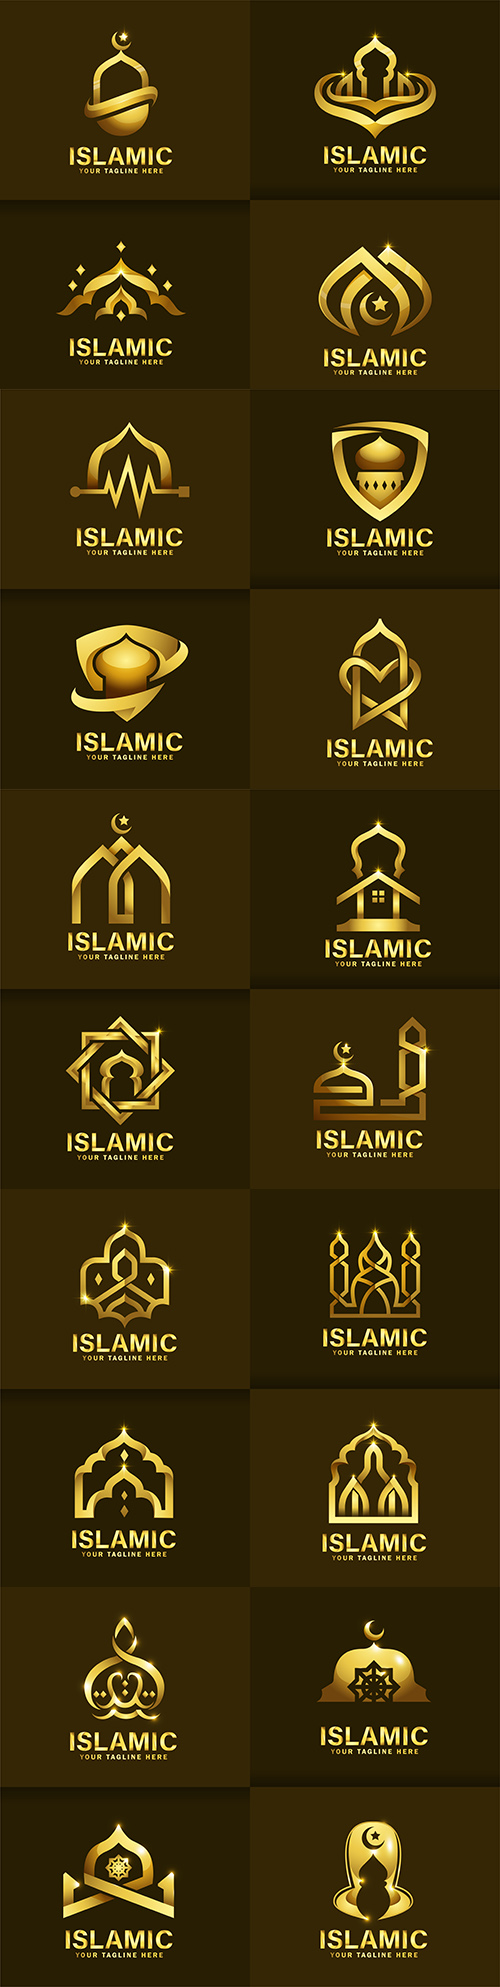 Luxurious Islamic logo template design golden mosque
